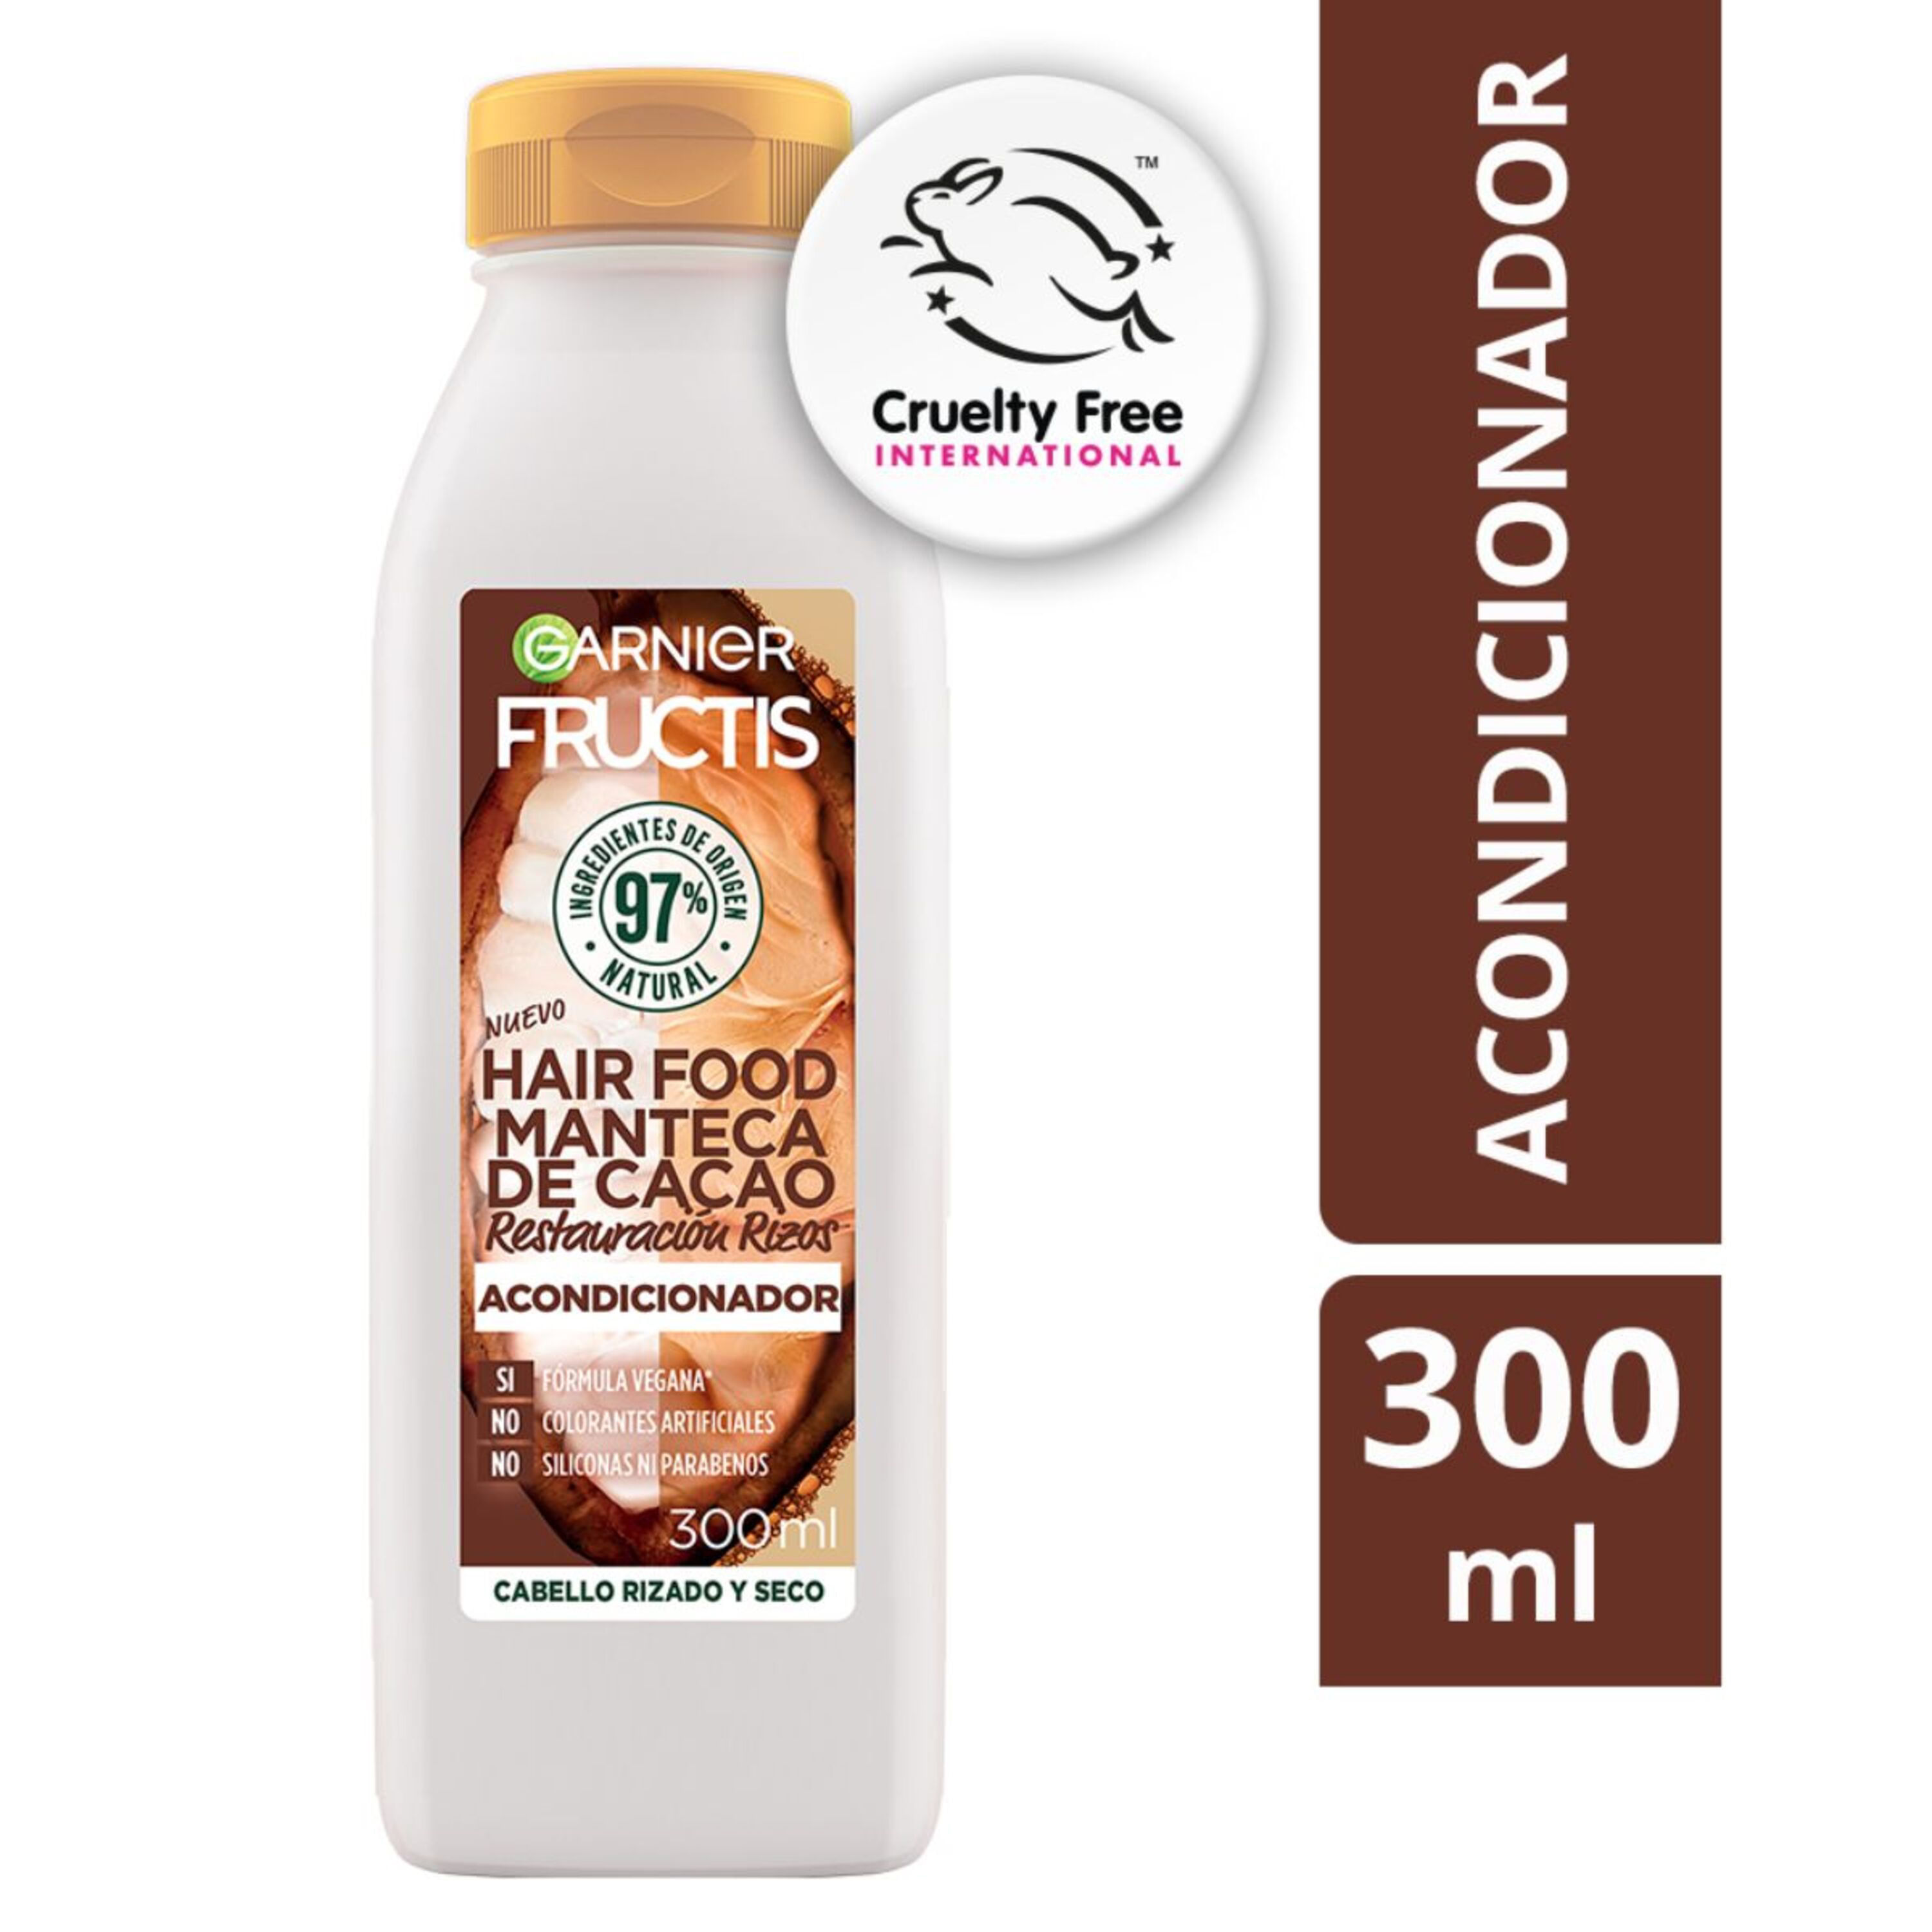 Acondicionador-Marca-Fructis-Con-Cacao-300ml-1-33987